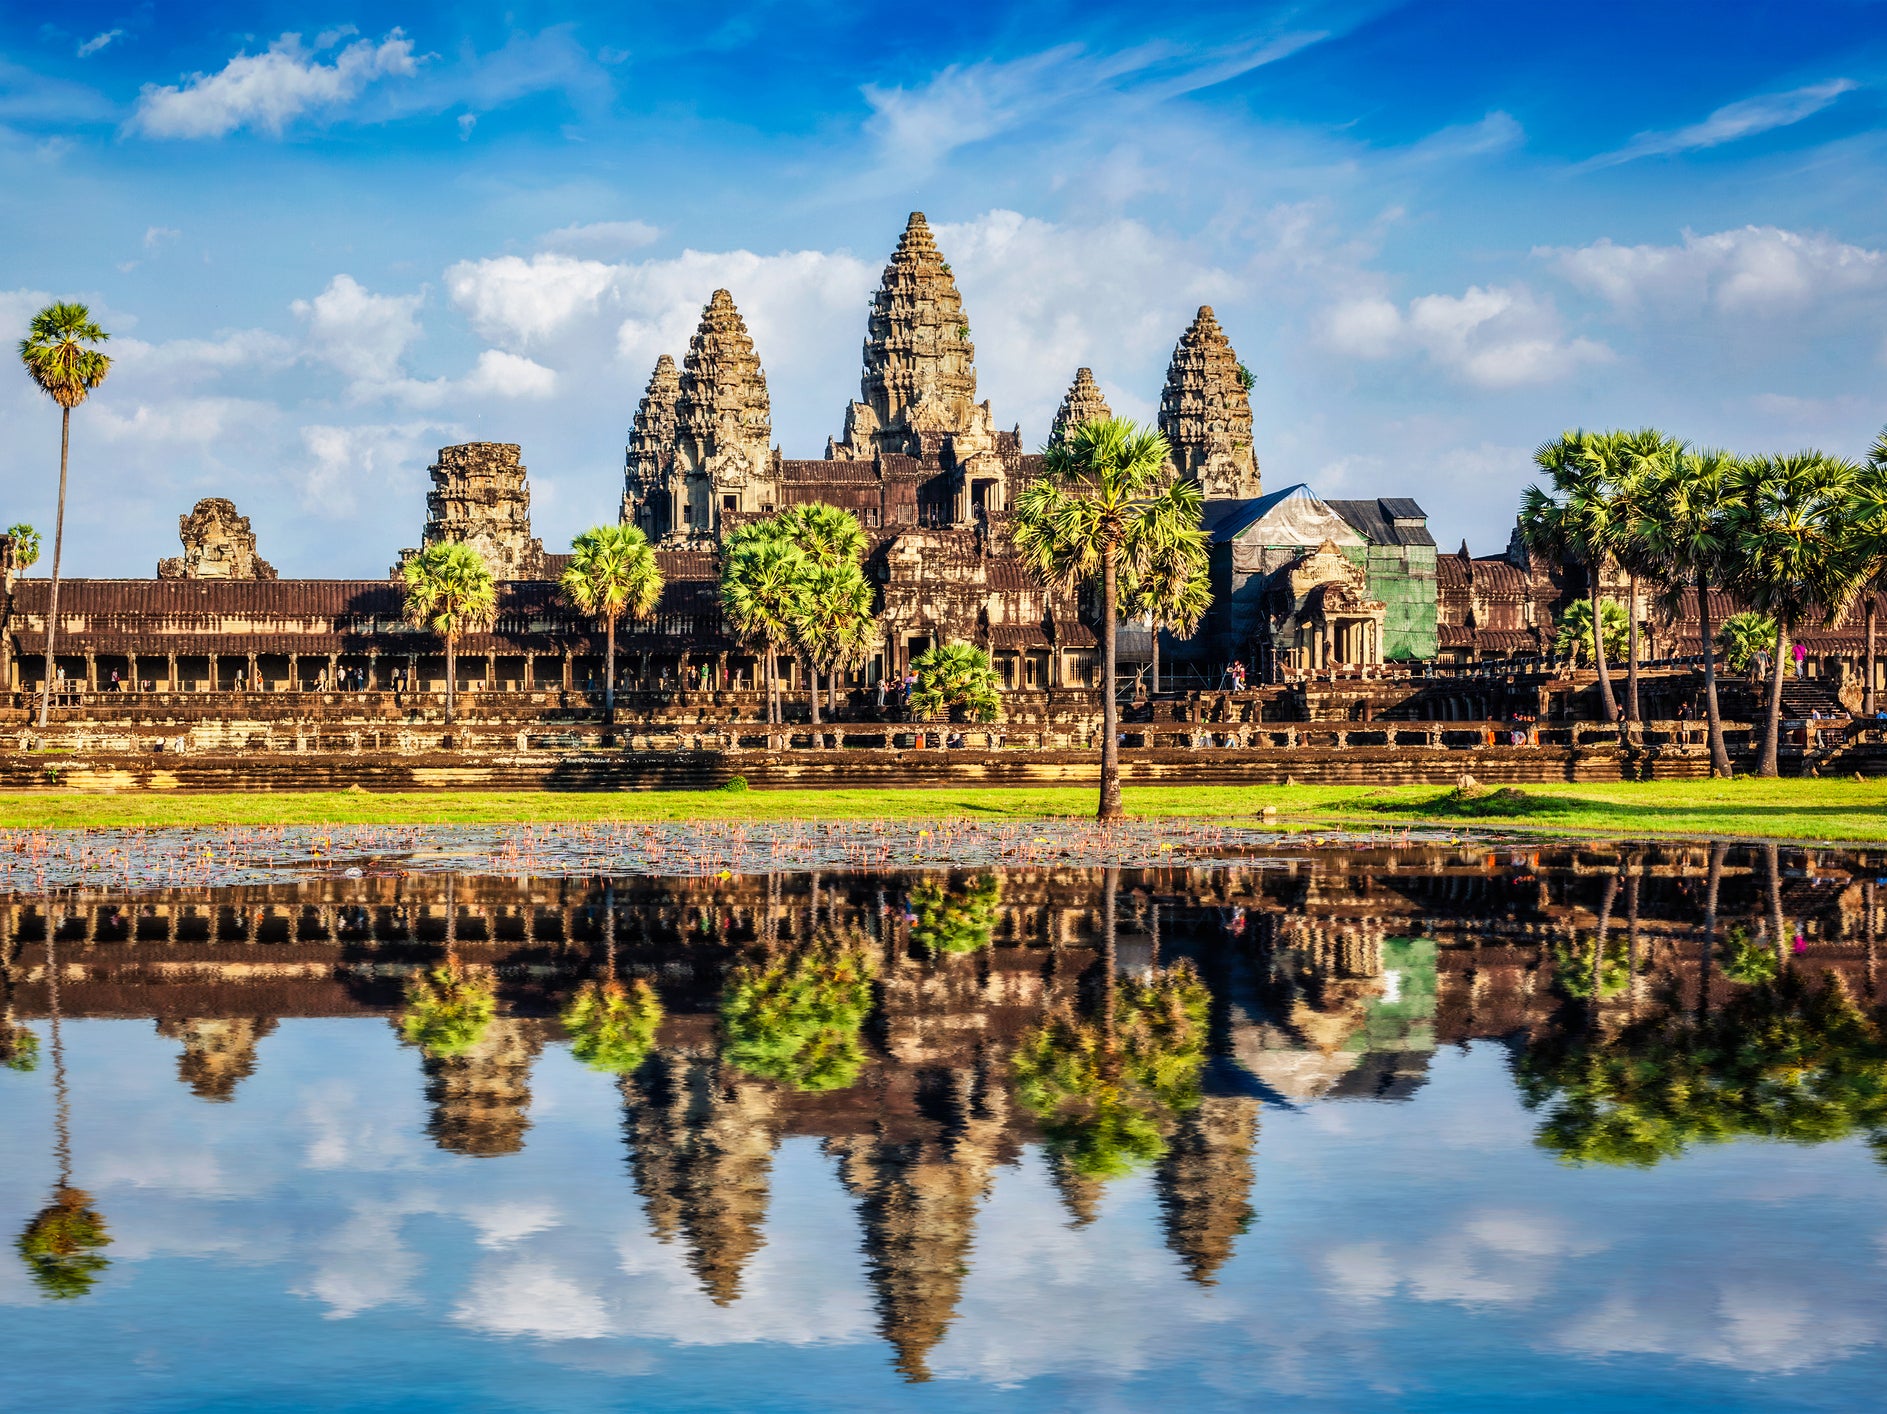 Visitors are gradually returning to Angkor Wat